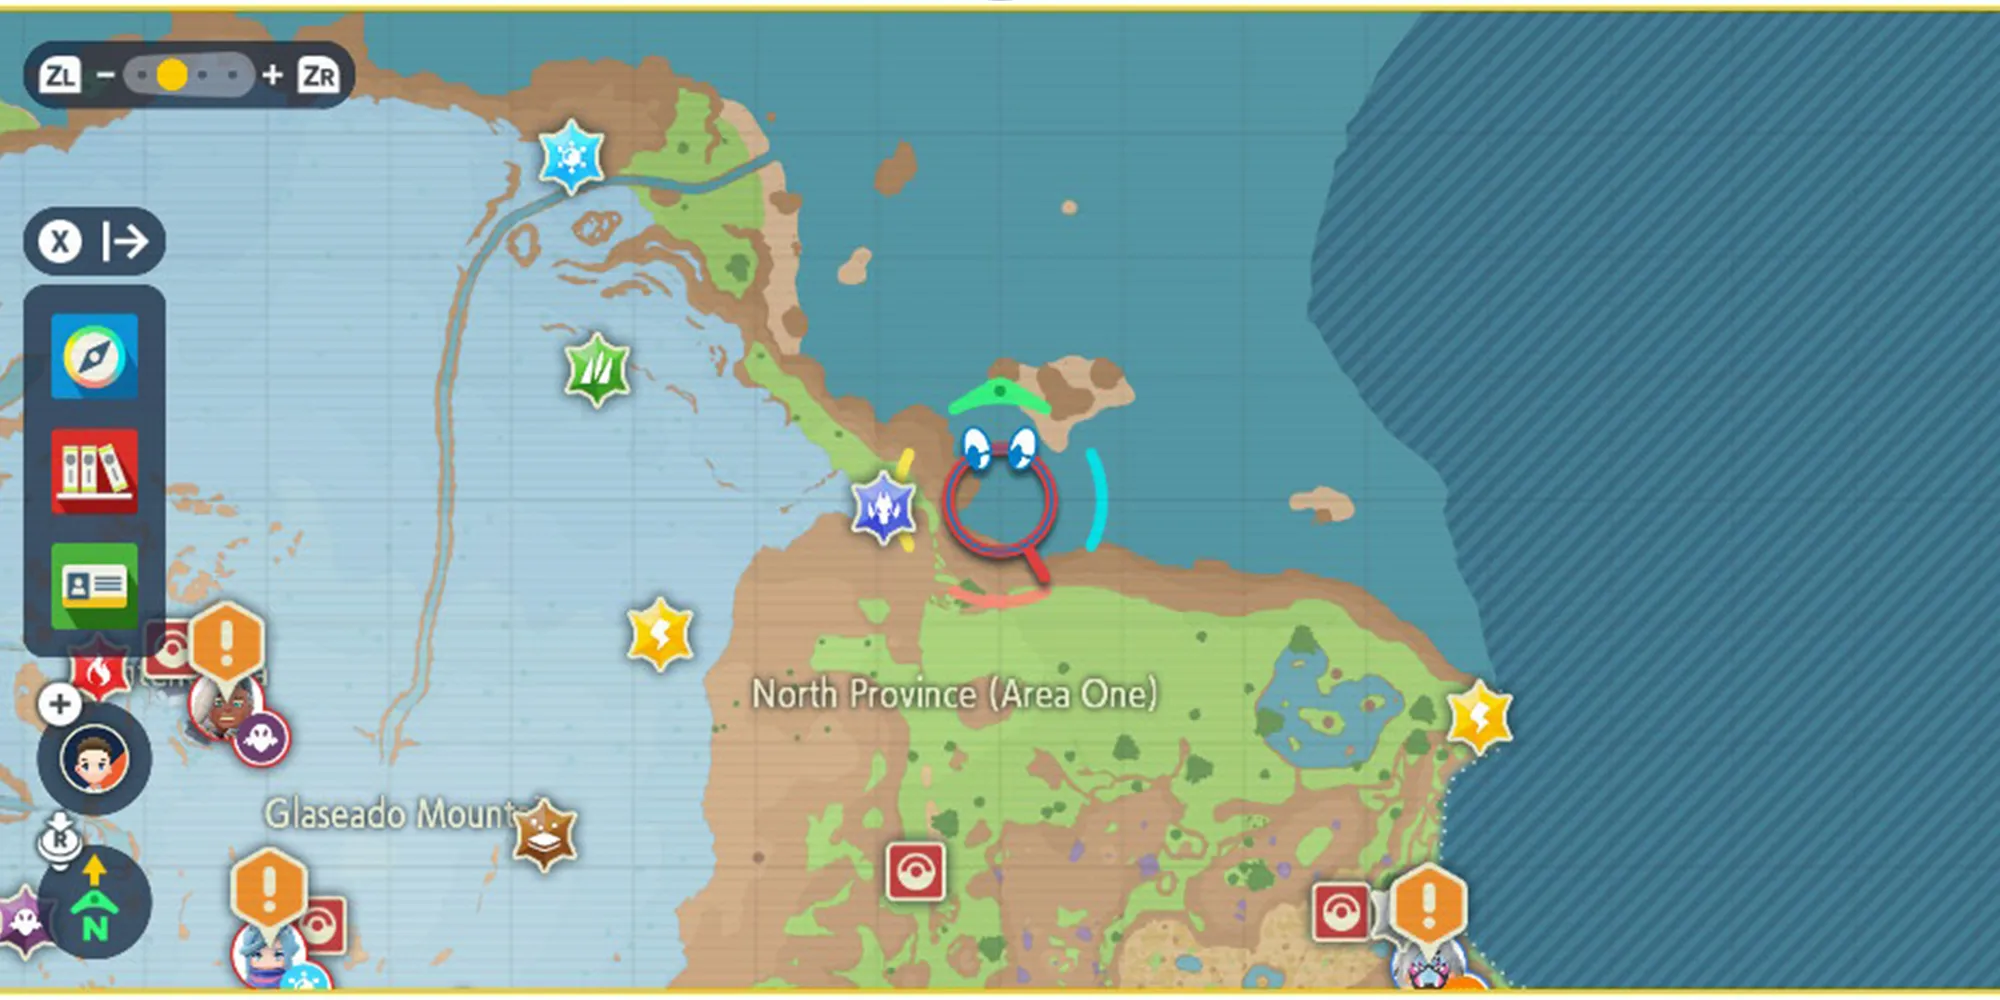 Pokémon Scarlet & Violet中北省区域一的屏幕截图